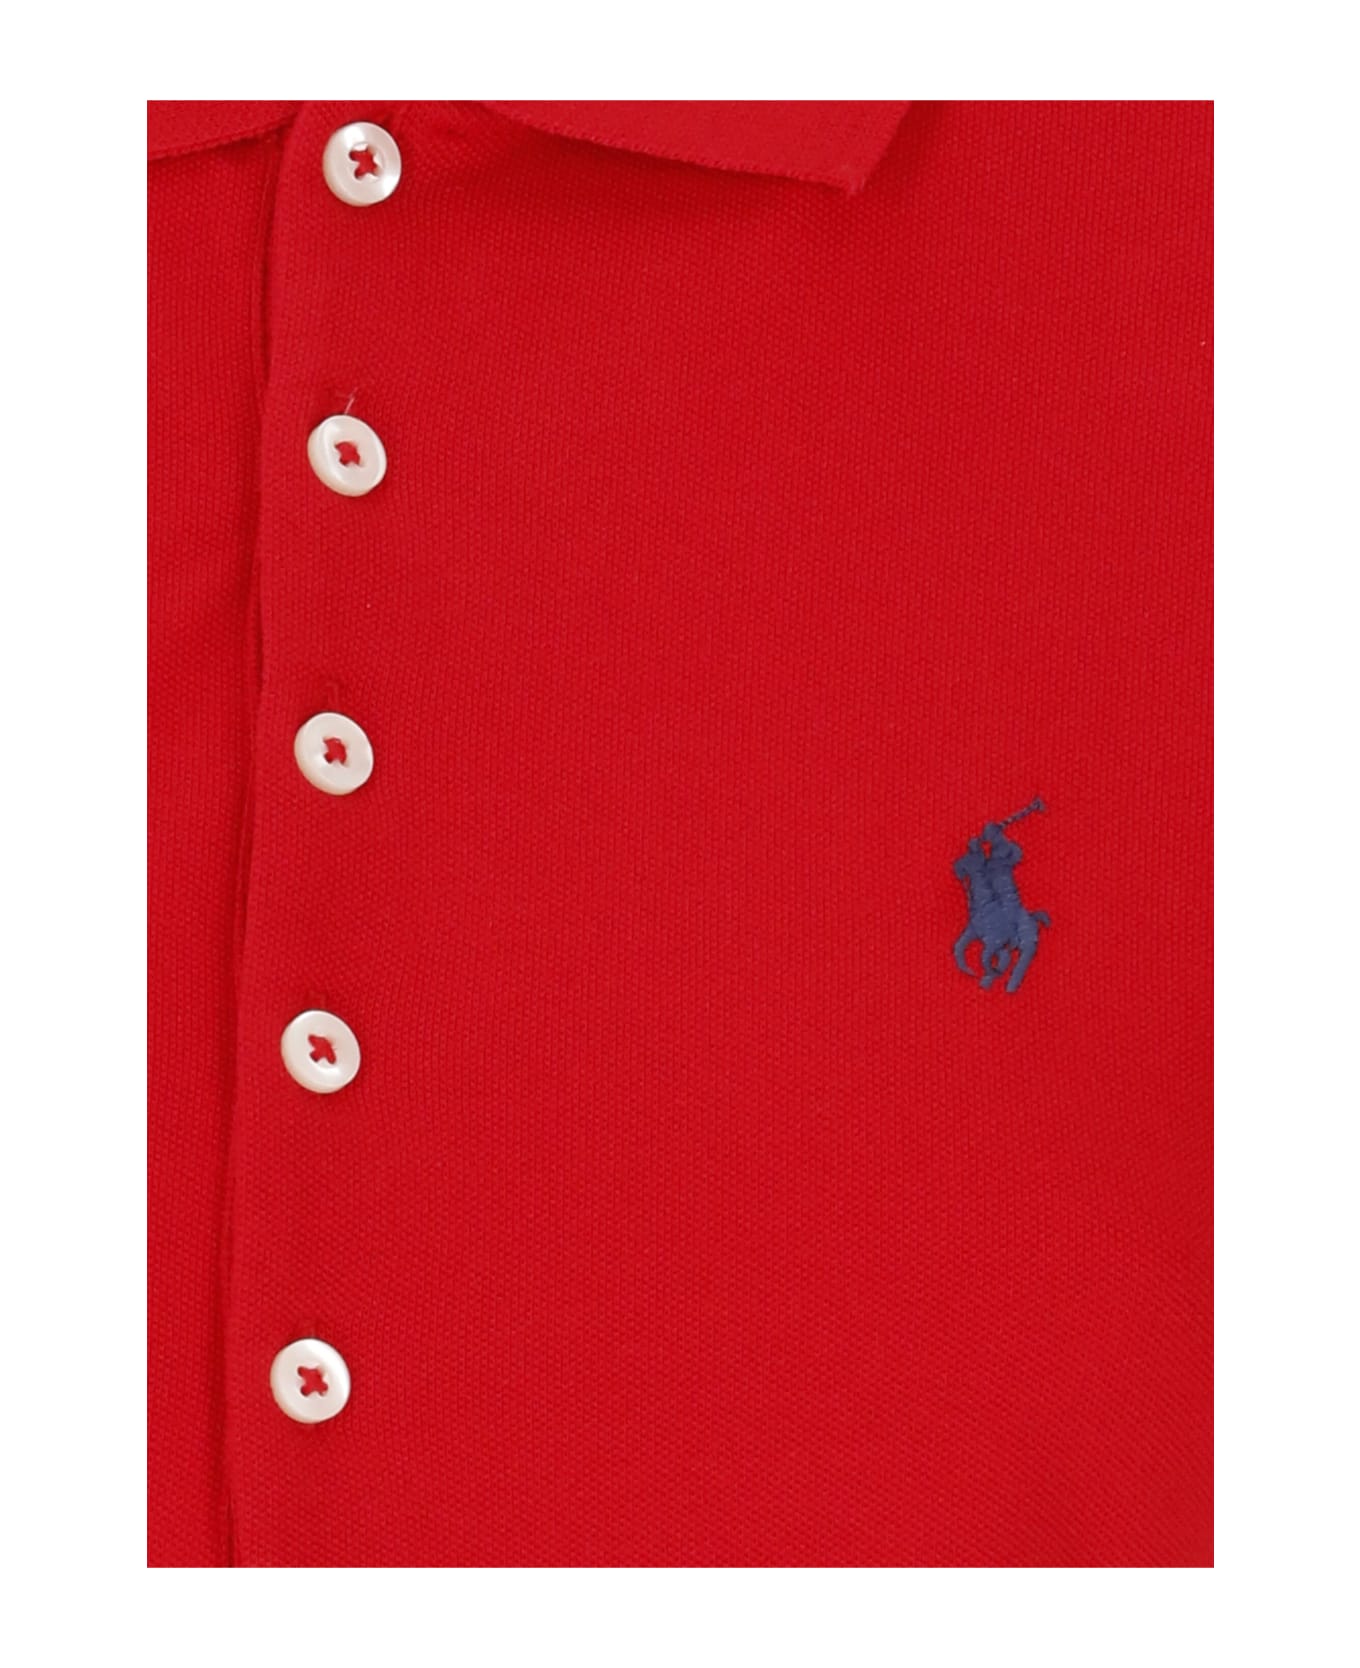 Ralph Lauren 'julie' Polo Shirt - Red